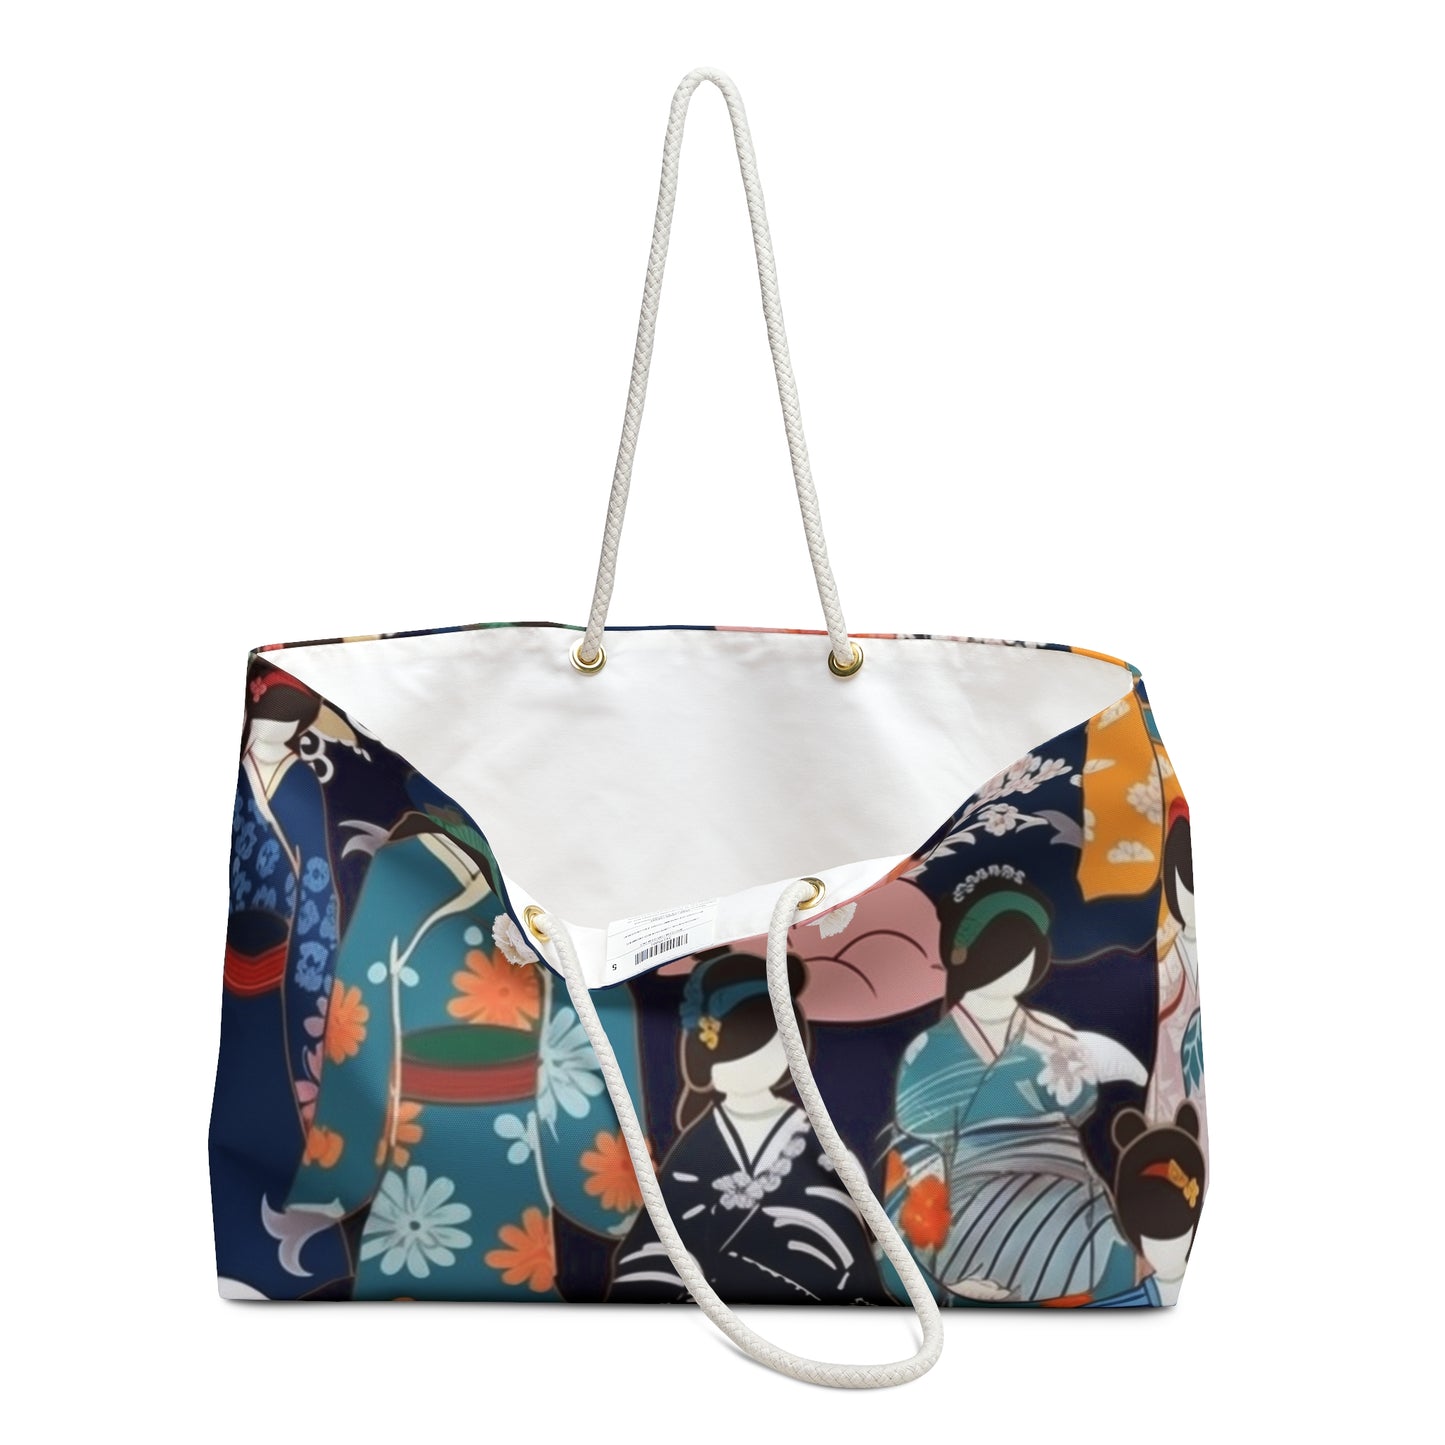 Kimono Dreams Weekender Bag: Experience Japanese Elegance